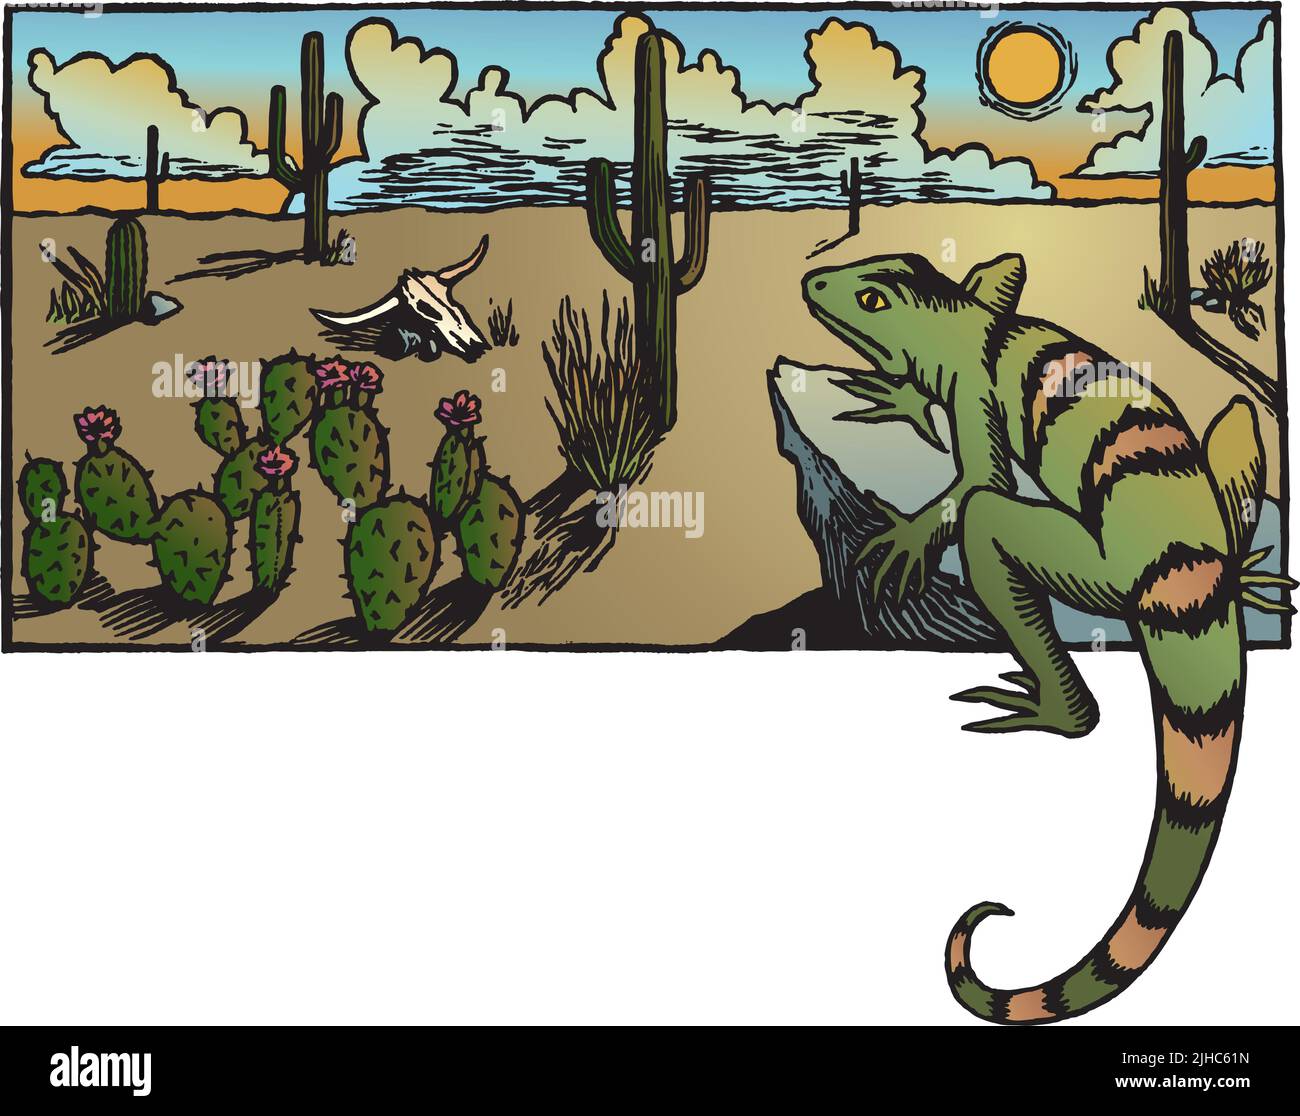 Ein Holzschnitt-Vektor-Illustration einer Wüstenlandschaft mit Kakteen und einer Eidechse. Stock Vektor